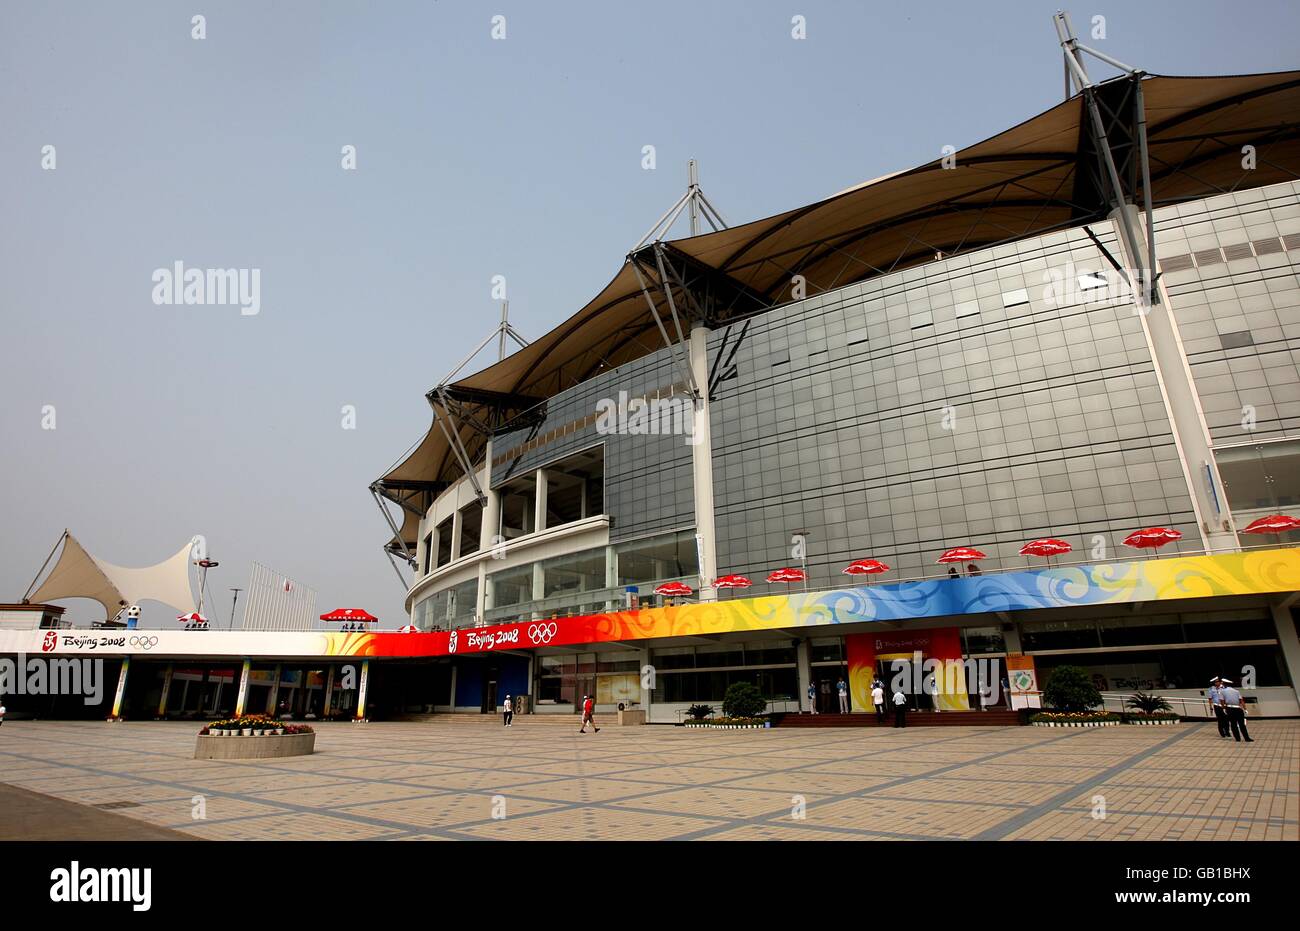 Olympische Spiele - Olympische Spiele In Peking 2008. Allgemeine Ansicht des Qinhuangdao Olympic Sports Center Stockfoto